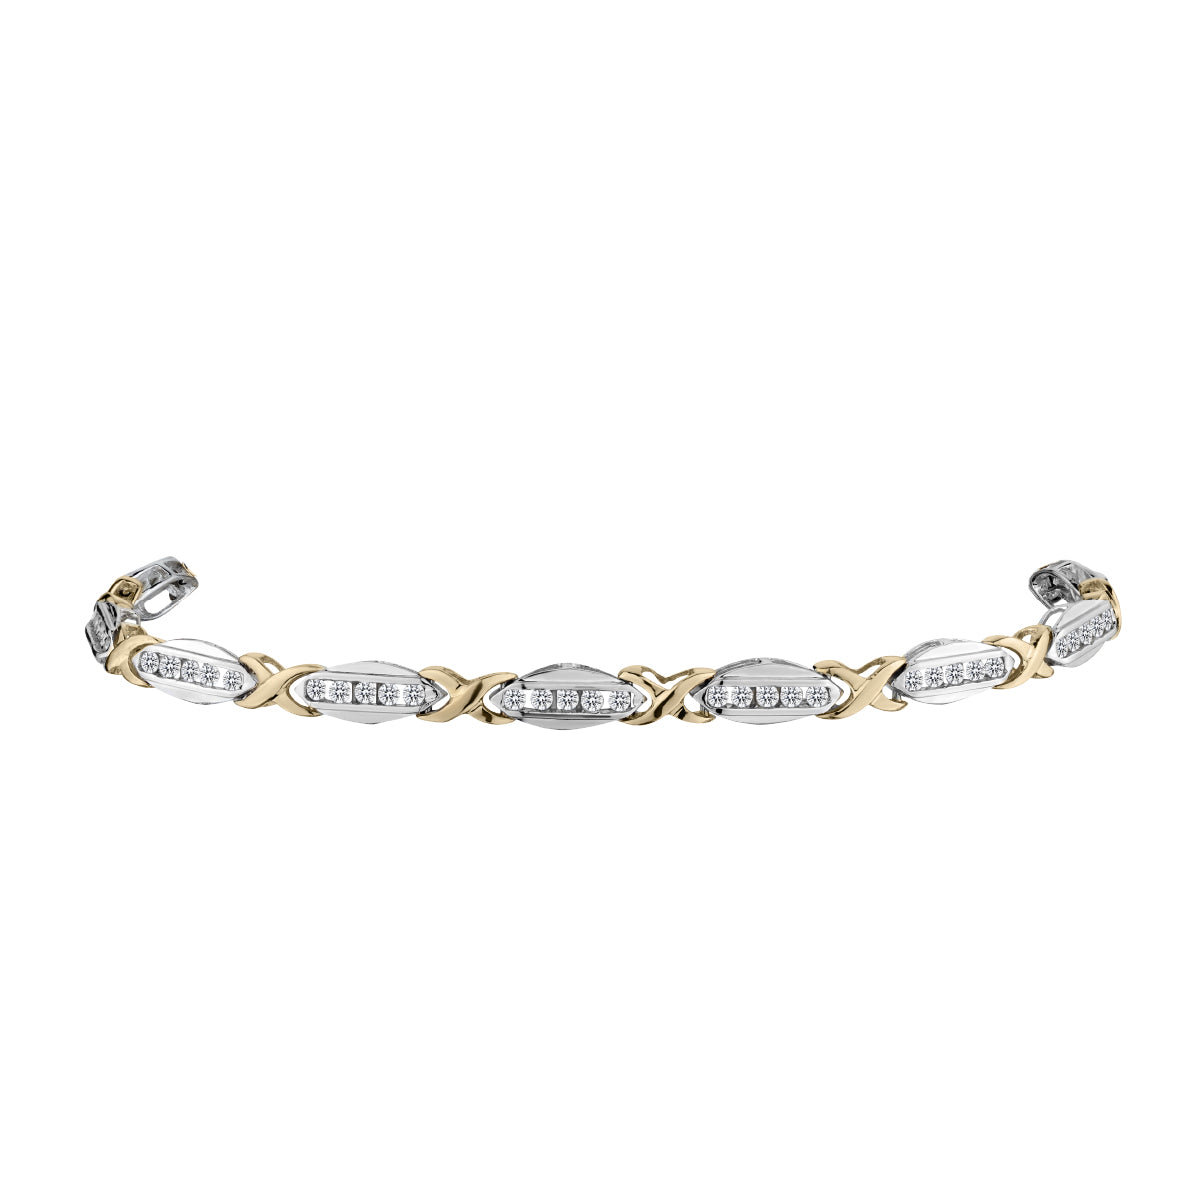 1.00 Carat Diamond Bracelet, 10kt Yellow & White Gold (Two Tone)…...................NOW